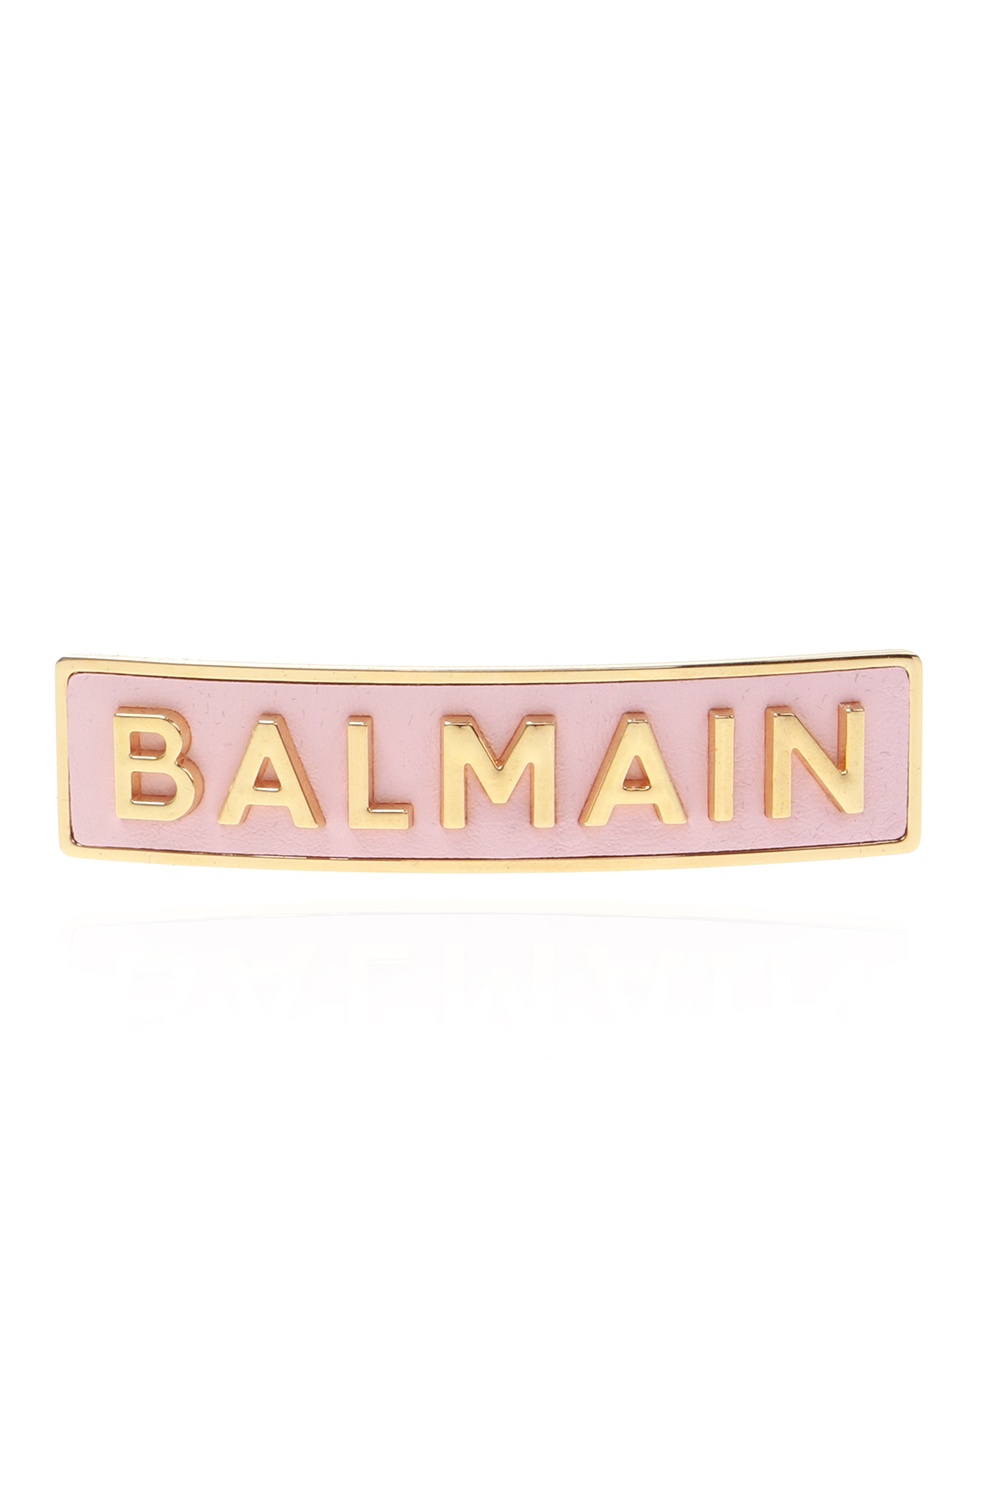 balmain short Hair clip with logo